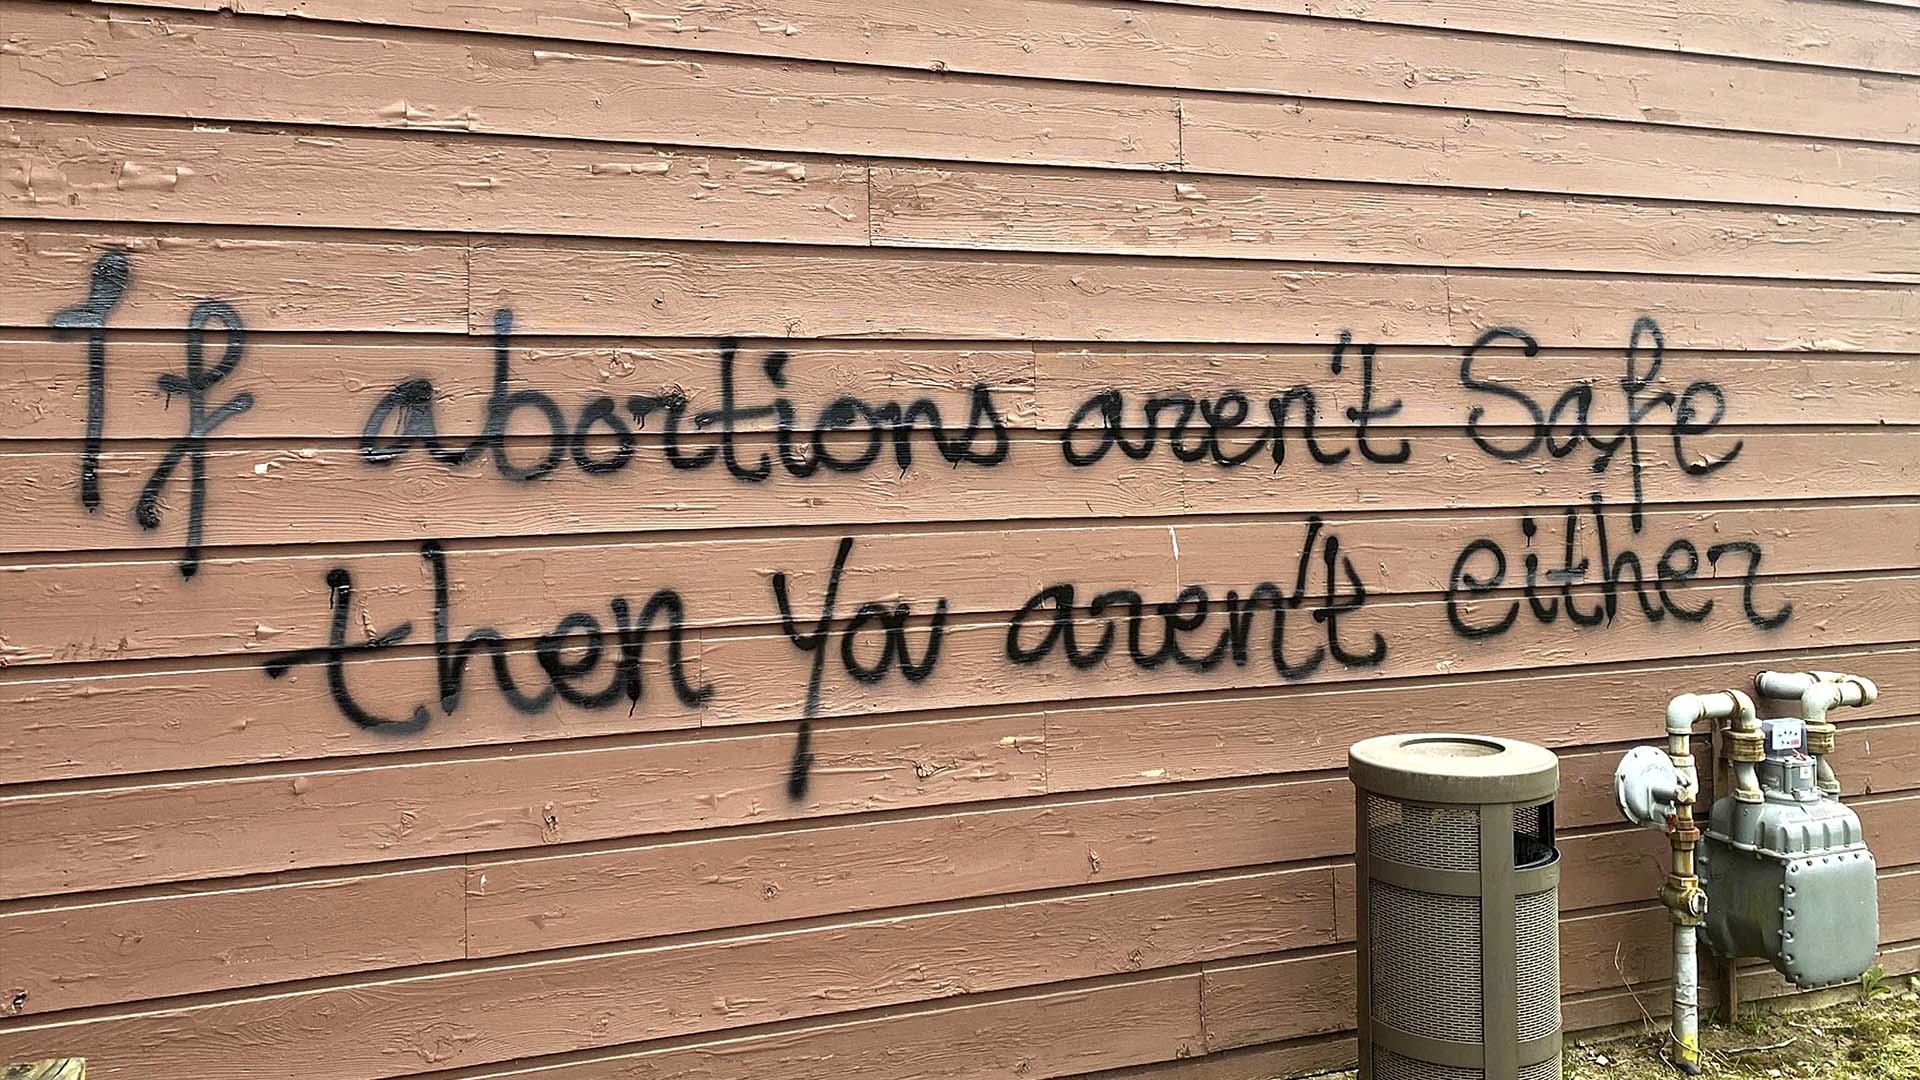 On ne savait pas immédiatement qui avait vandalisé le bâtiment, mais un graffiti peint à la bombe à l'extérieur proclamait «Si les avortements ne sont pas sécuritaires, alors vous n'êtes pas en sécurité non plus».